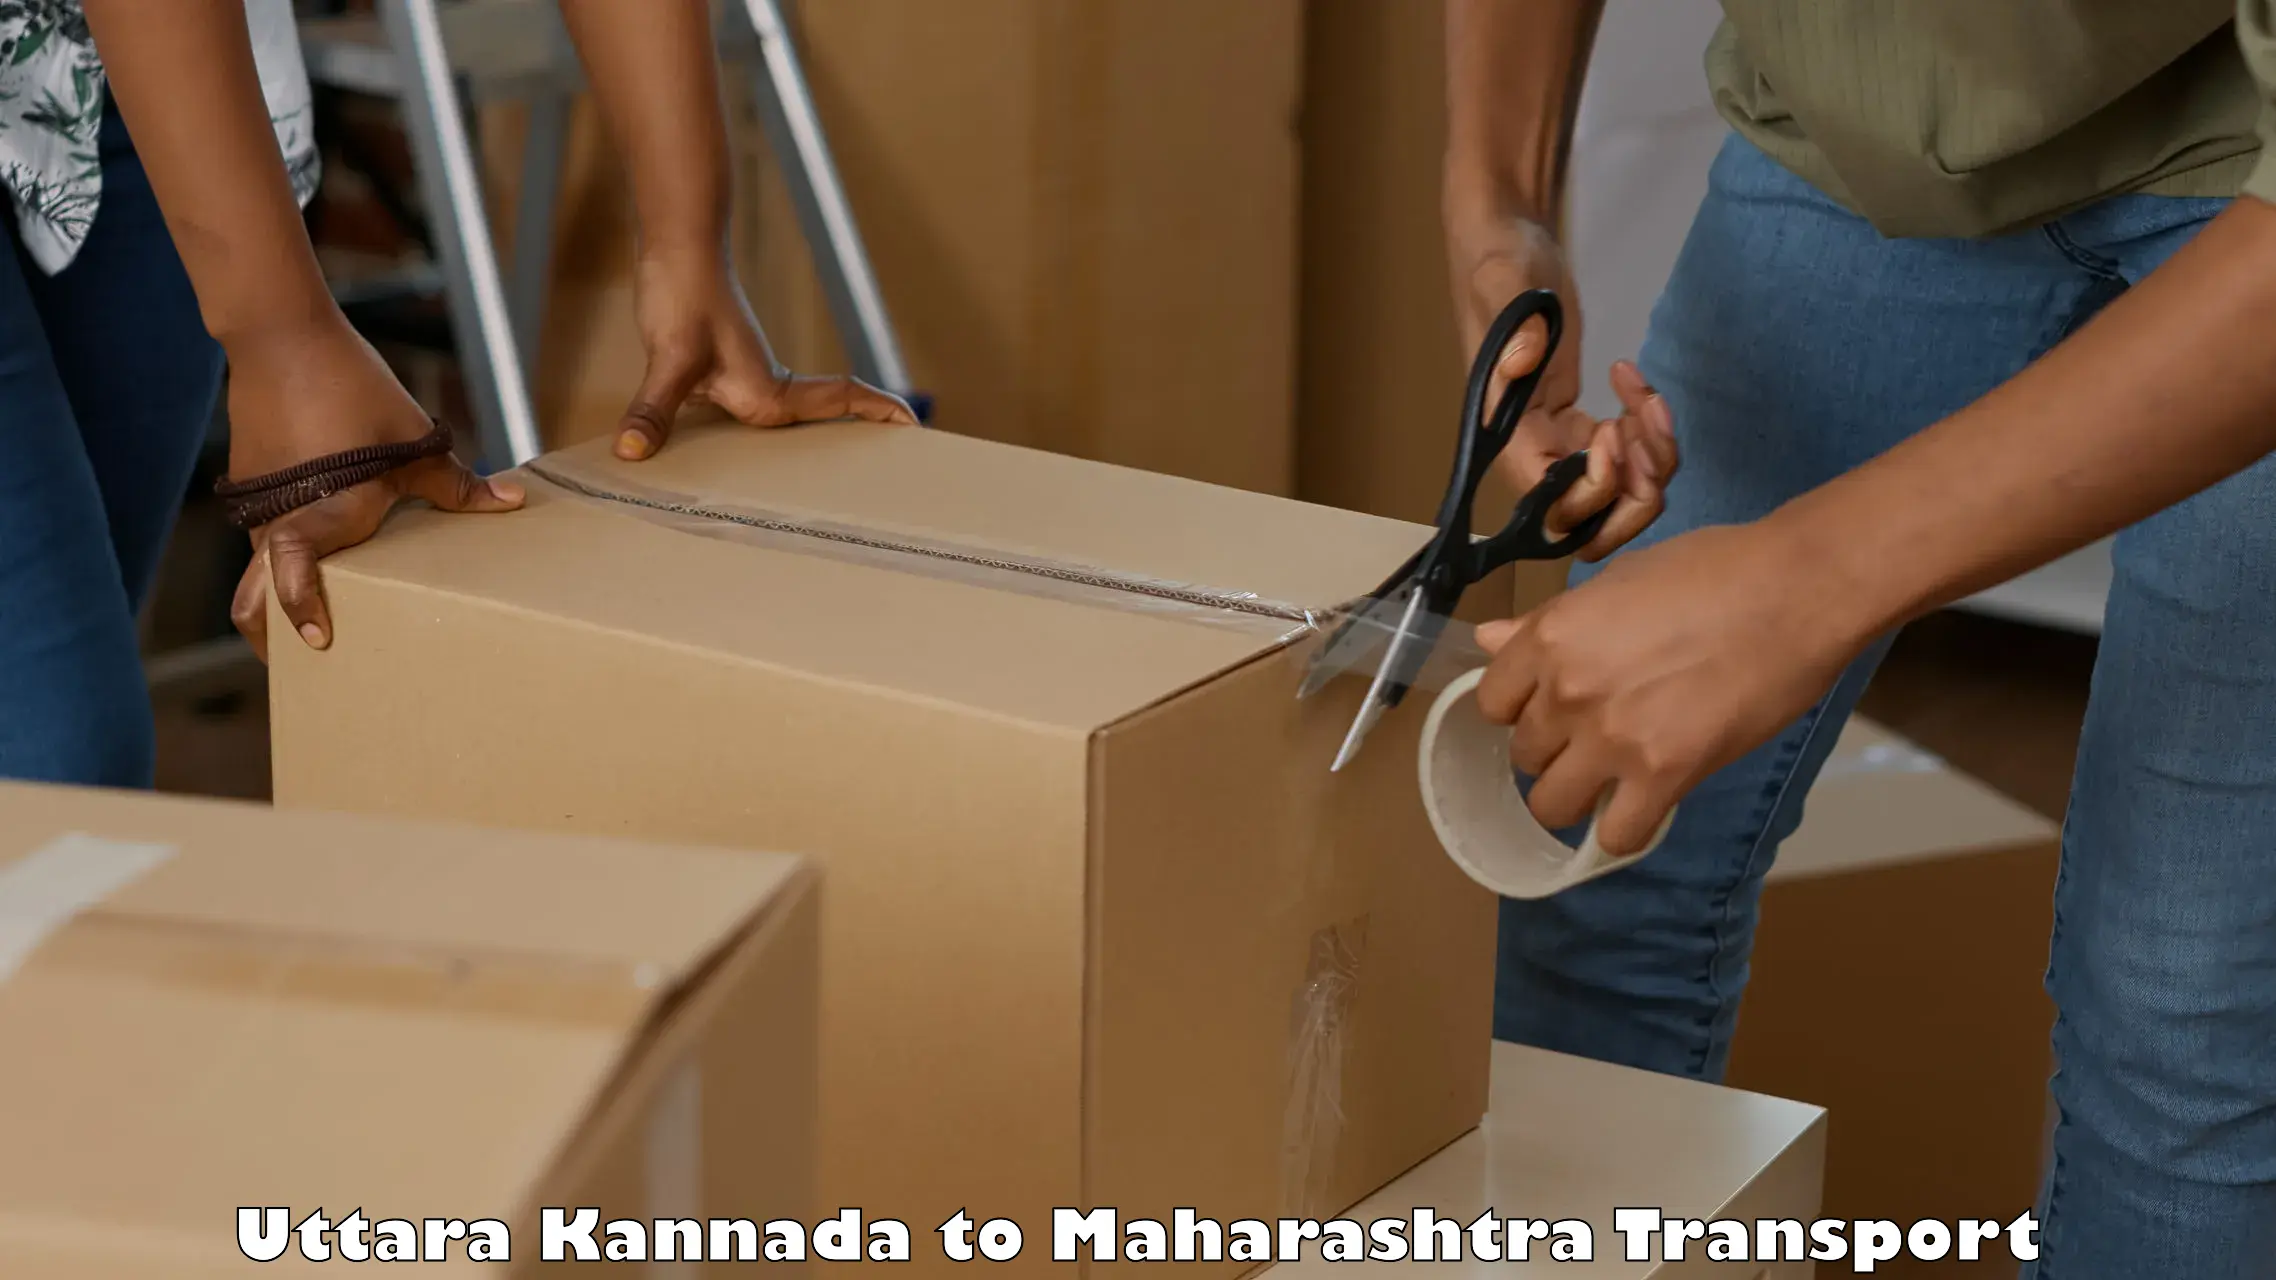 Delivery service Uttara Kannada to Navi Mumbai